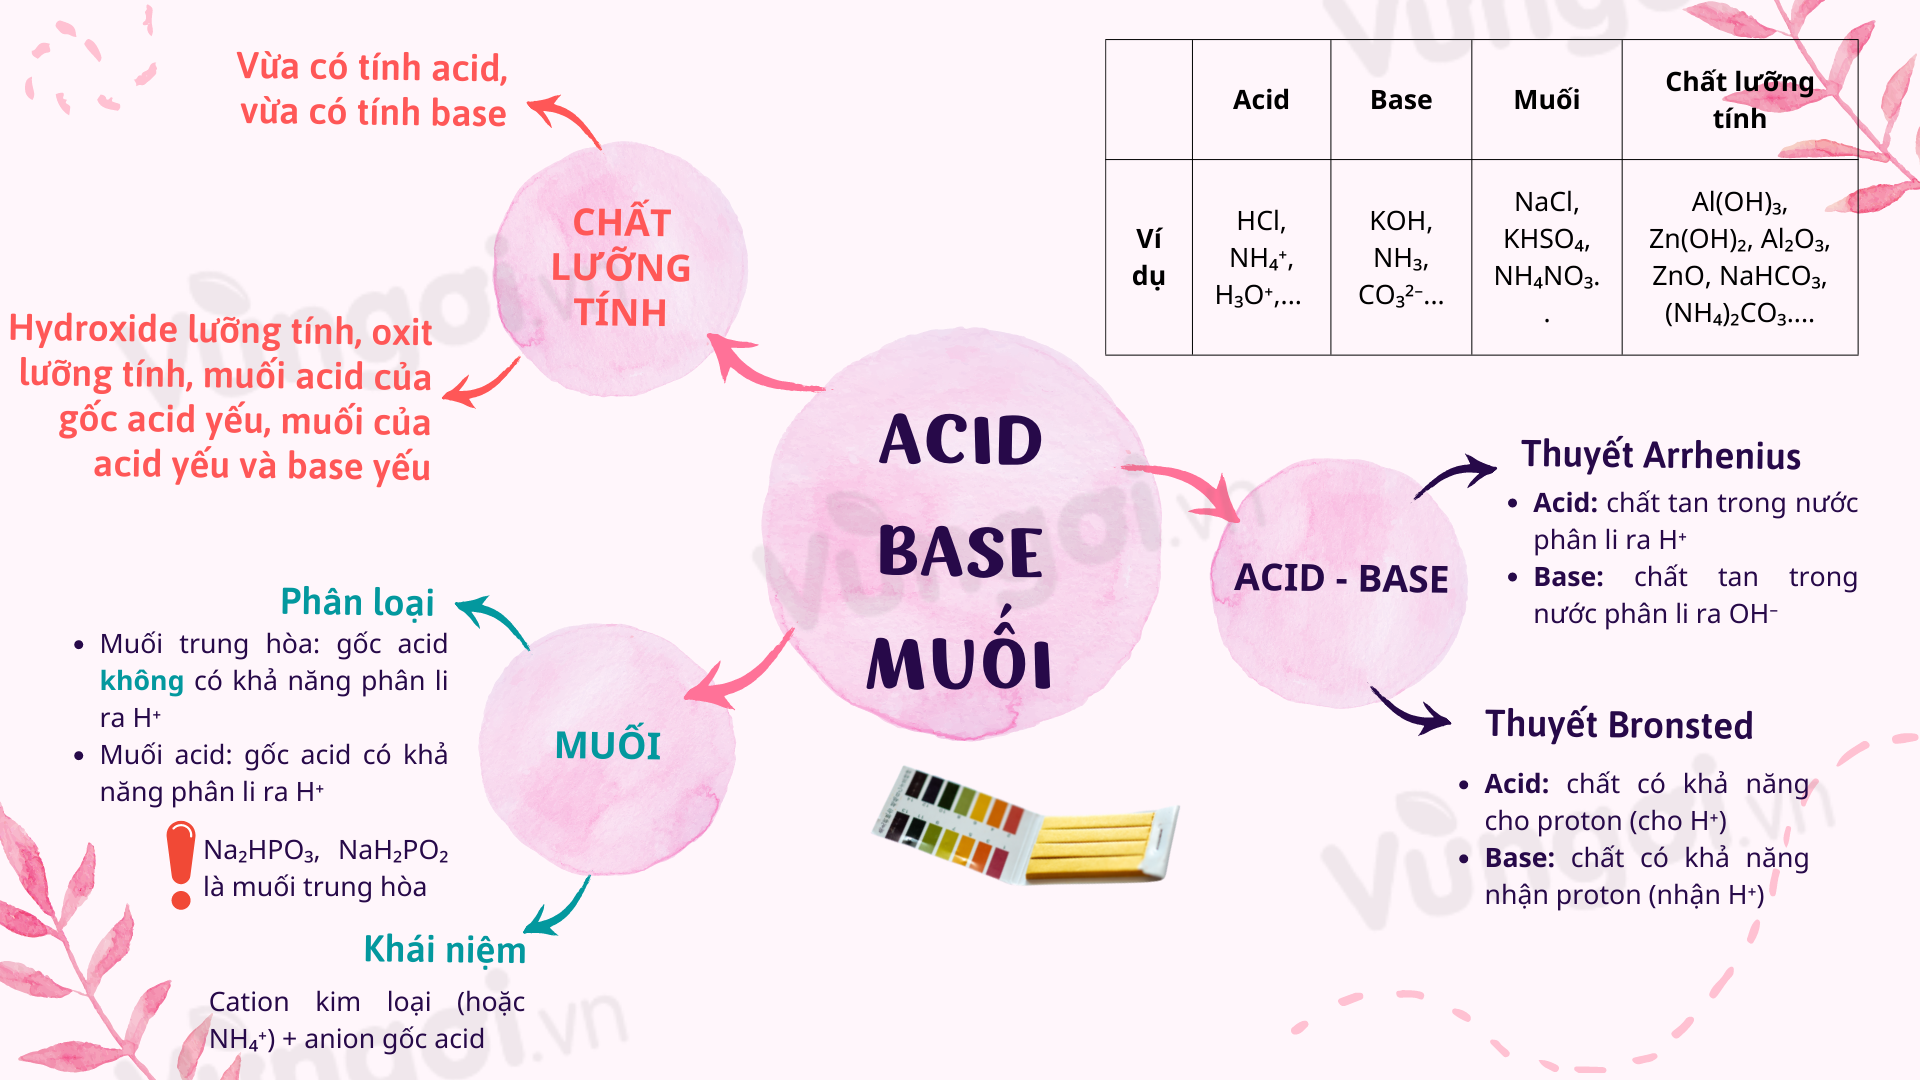 Lý thuyết sơ đồ tư duy về acid - base - muối - chất lưỡng tính kho ...